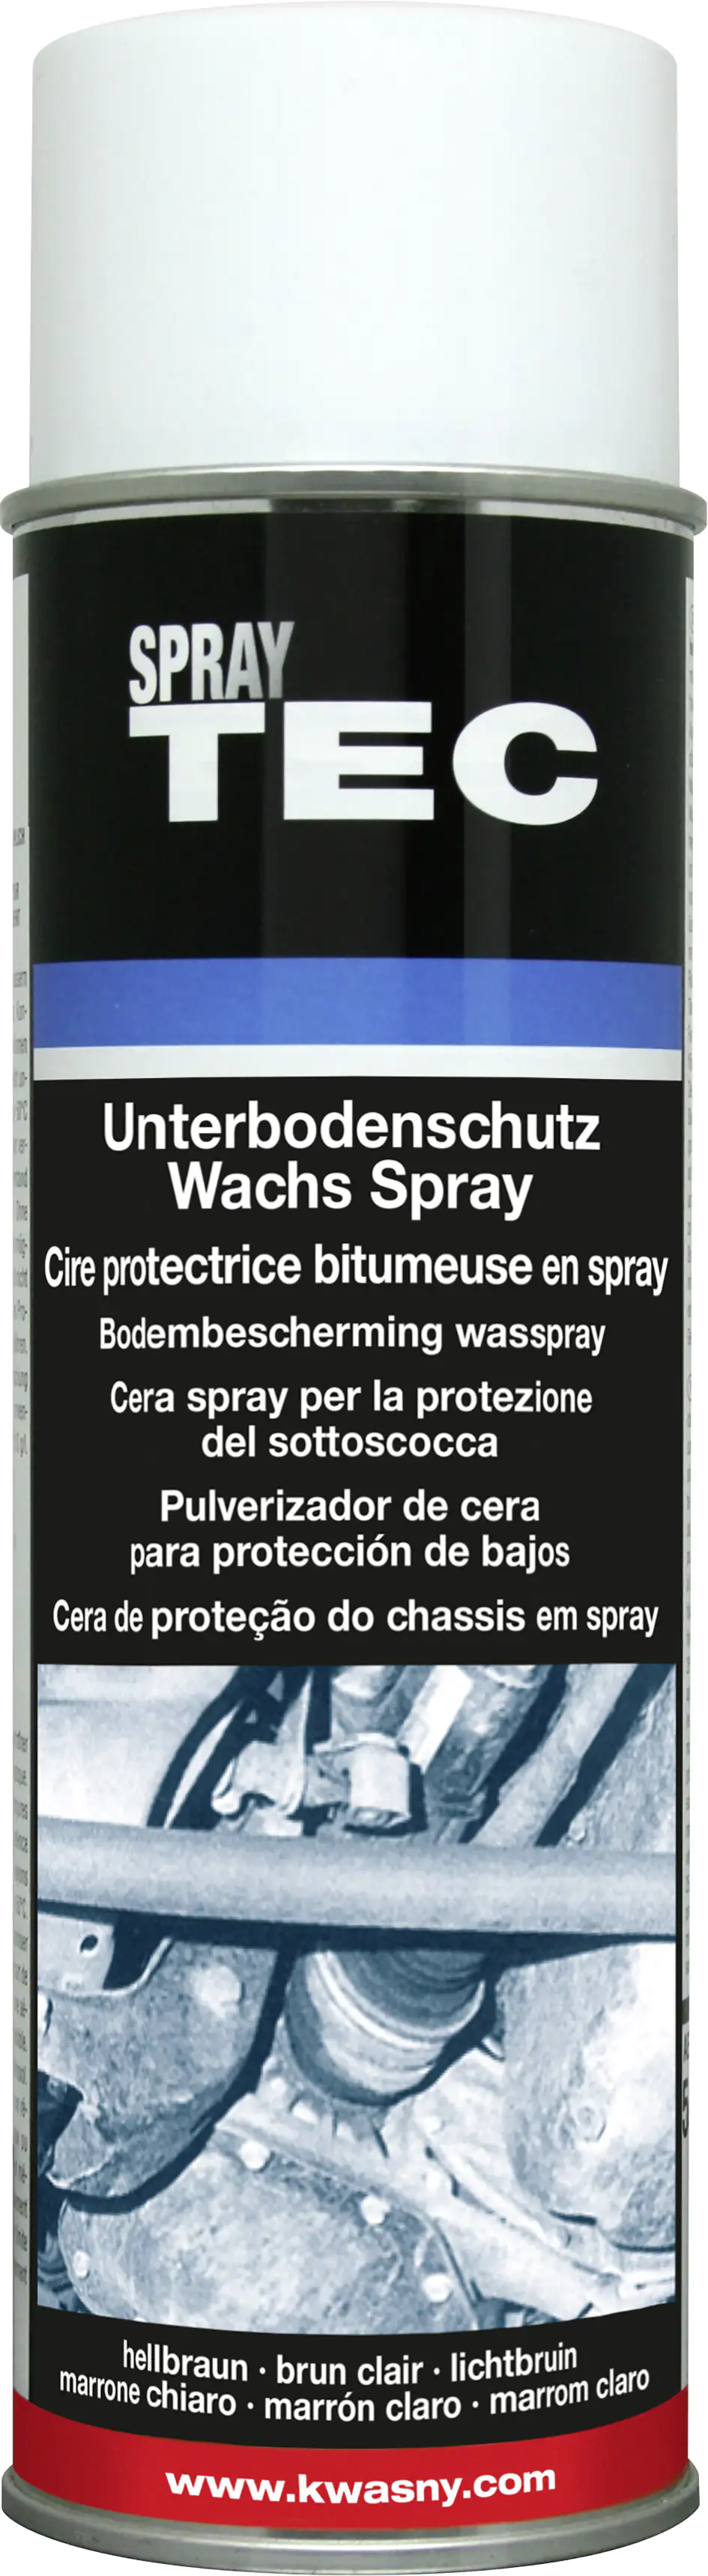 SprayTec Wachs Unterbodenschutz Spray 500ml